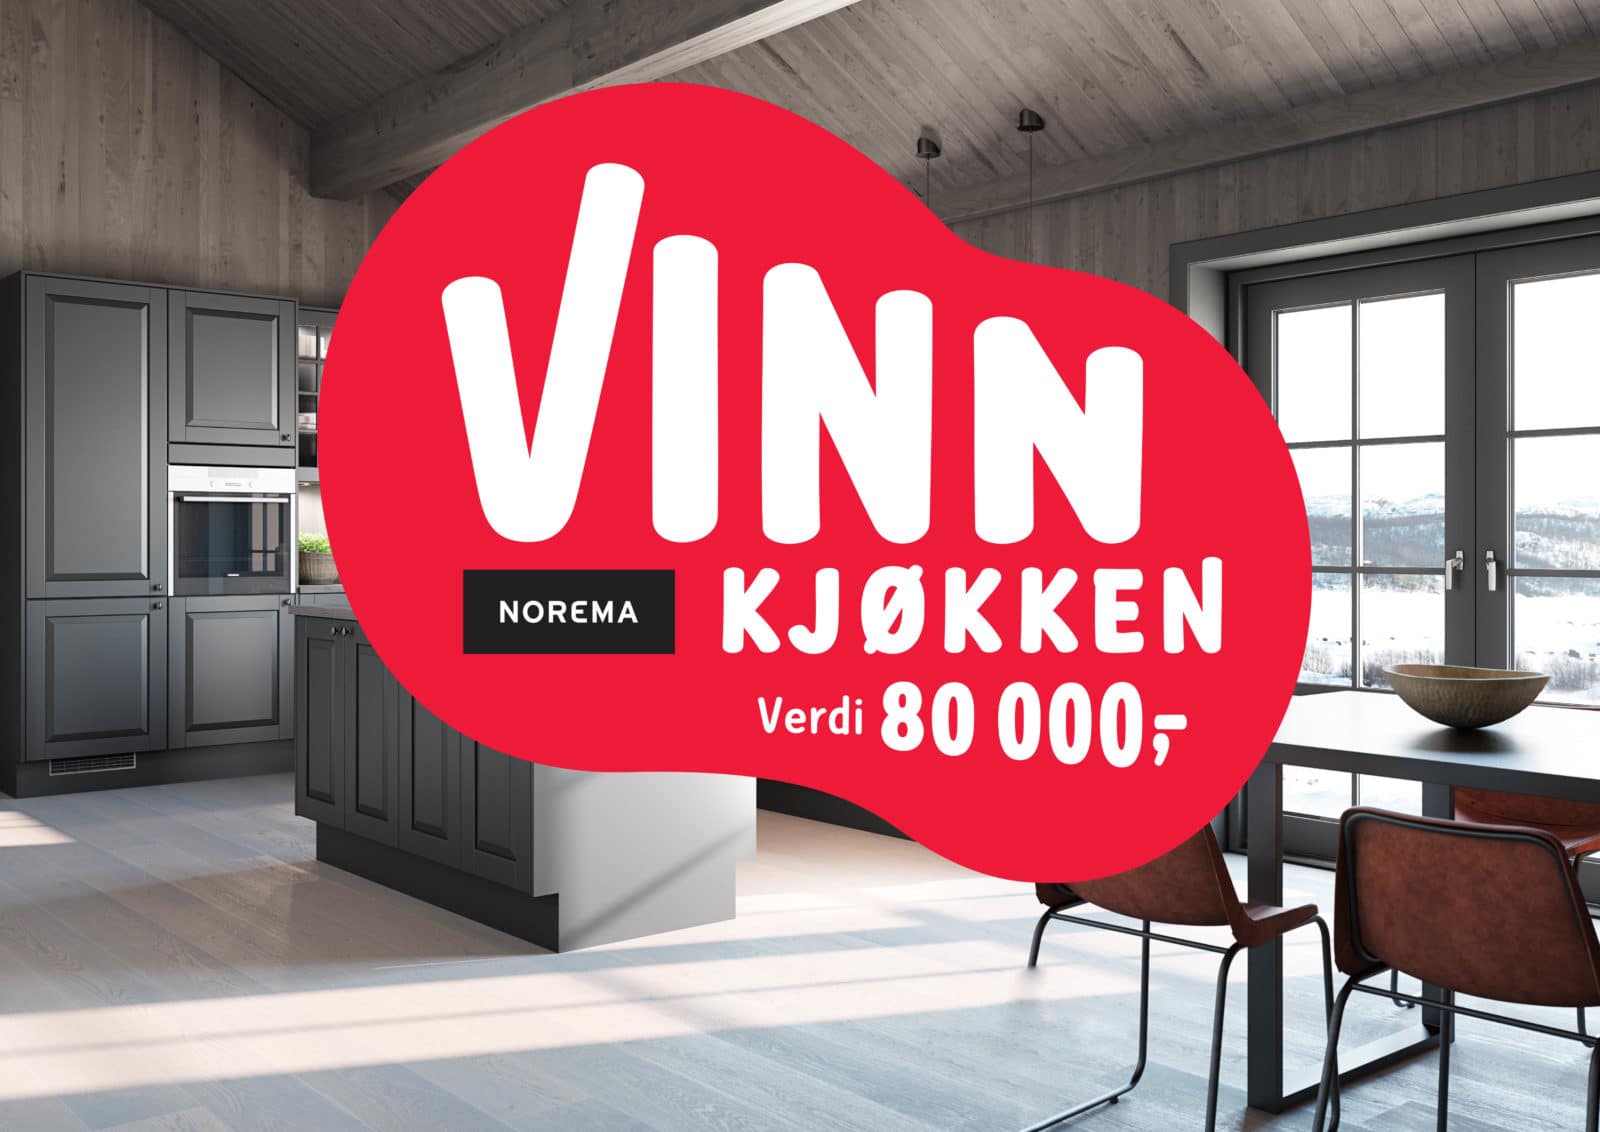 Bilde av kjøkken + tekst: Vinn kjøkken til en verdi av 80 000 kr